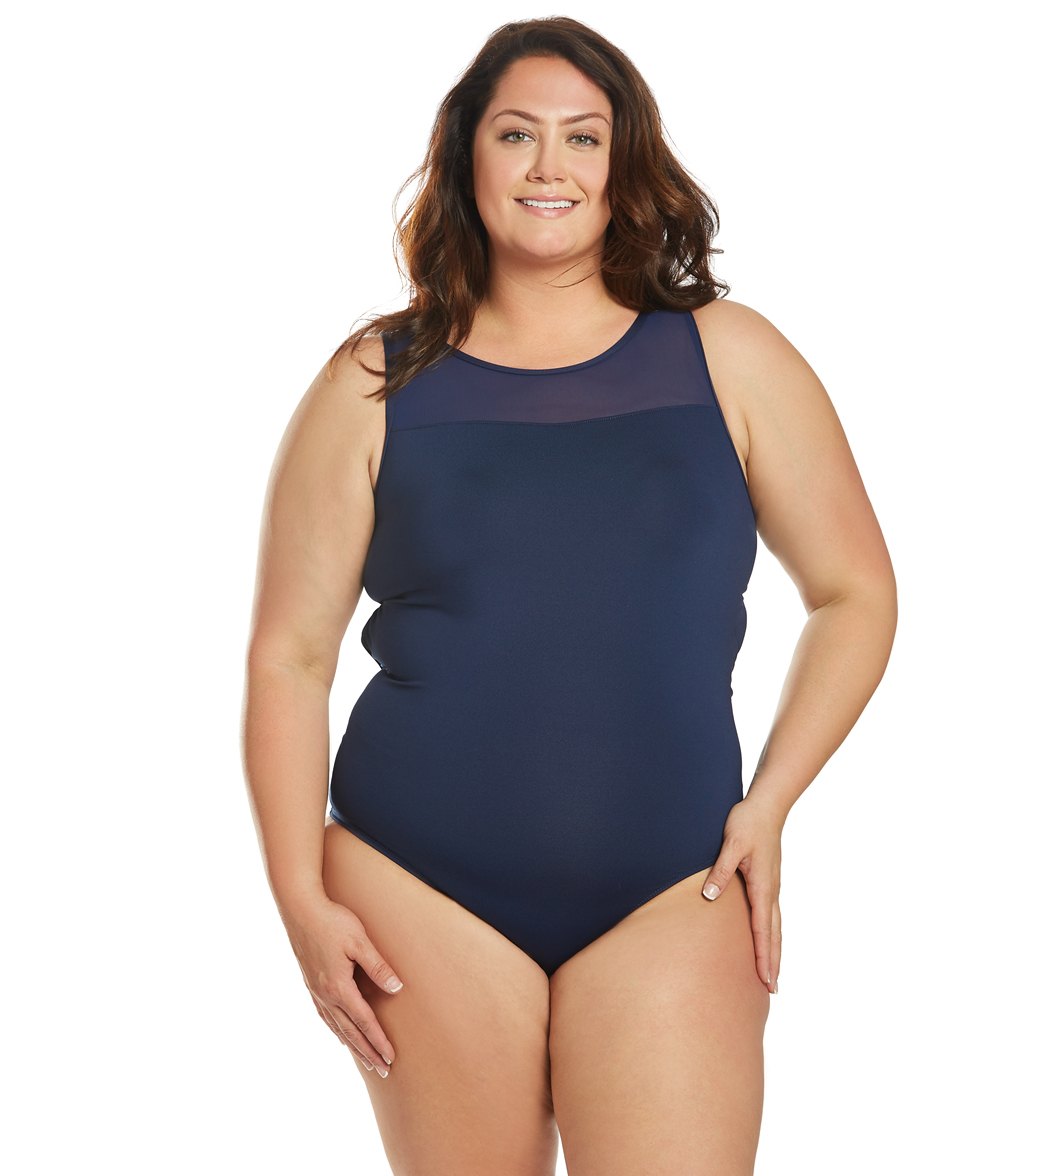 Dolfin Women's Plus Size Aquashape Solid Power Mesh Chlorine Resistant One Piece Swimsuit - Navy 16 - Swimoutlet.com